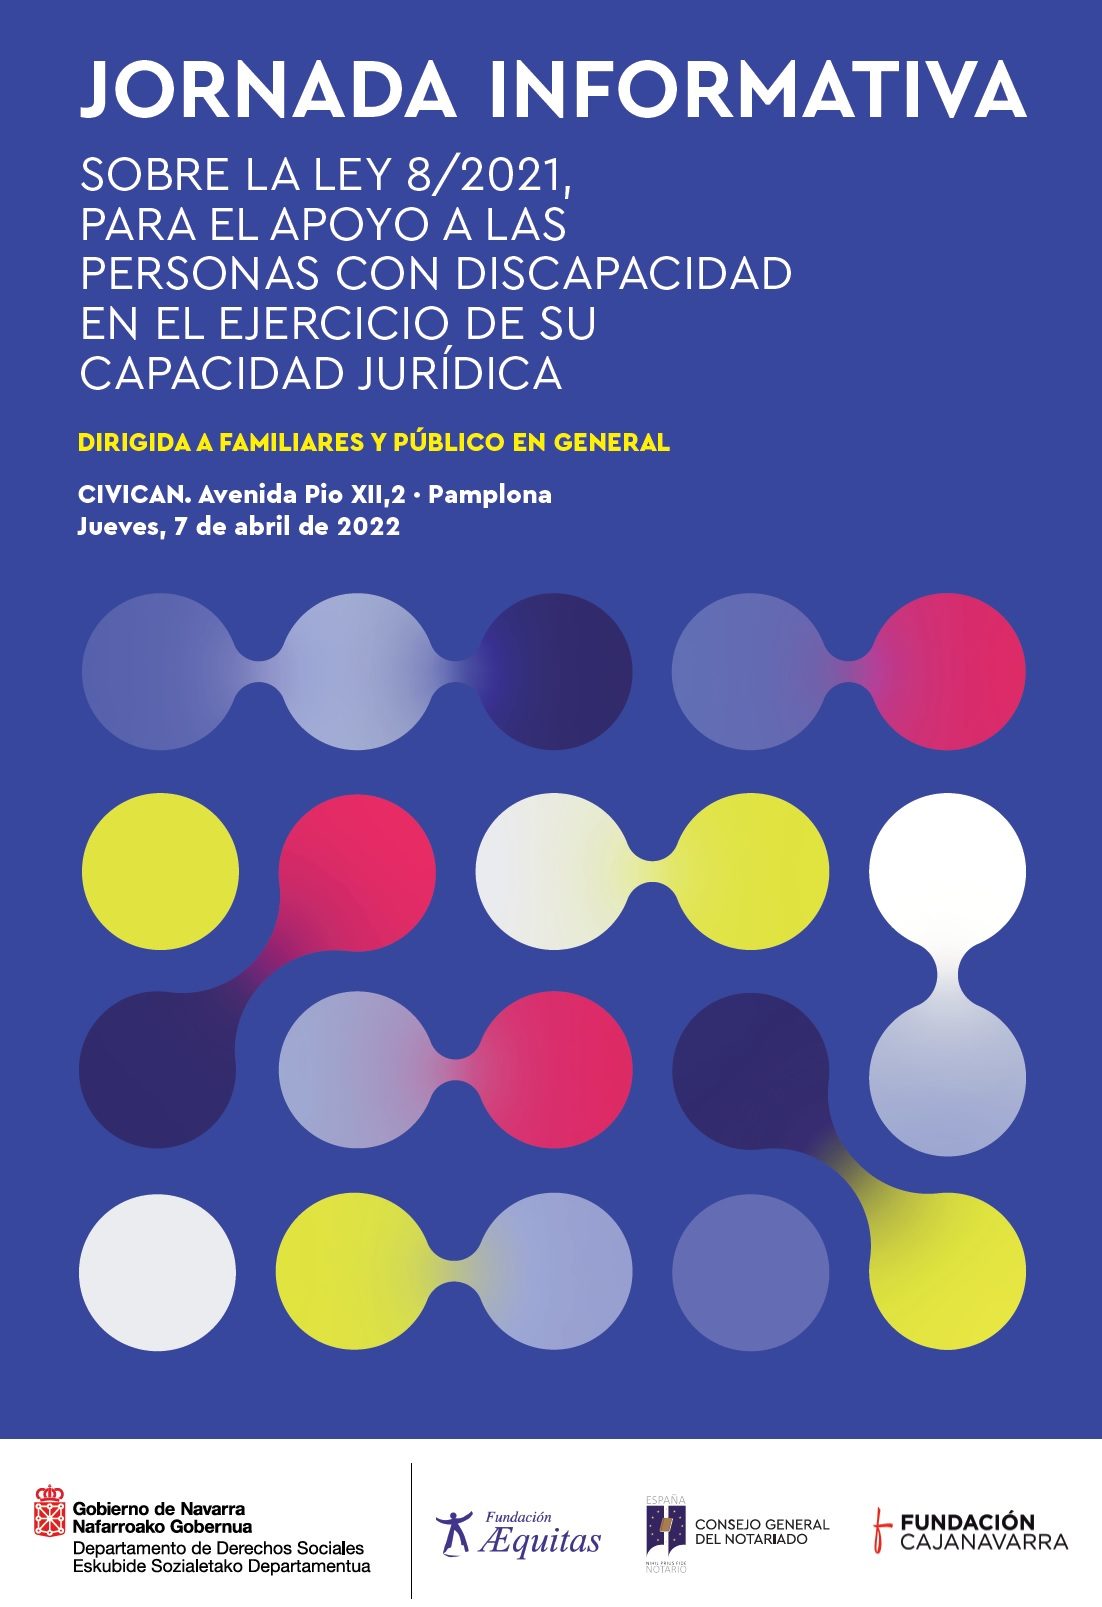 Jornada informativa organizada por el Gobierno de Navarra, sobre la Ley 8/2021. ￼￼￼￼